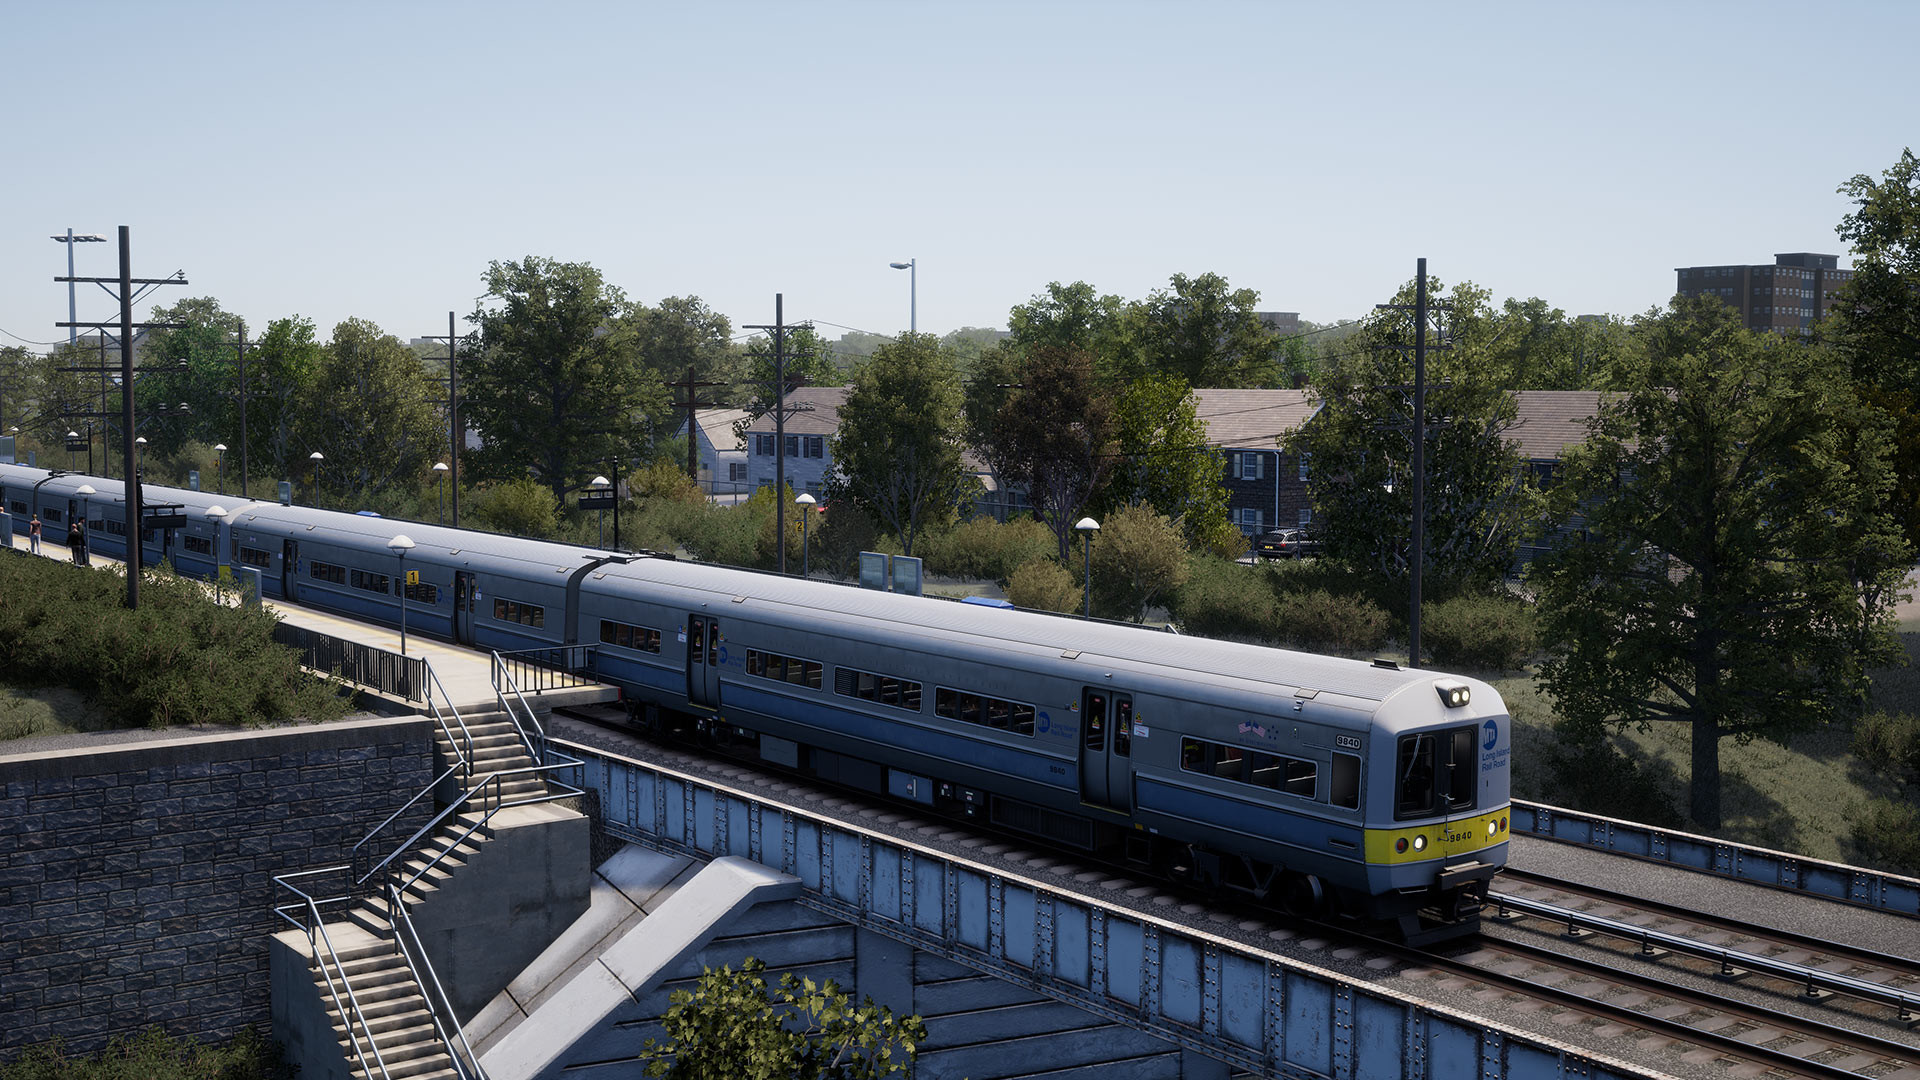 Train Sim World 2: LIRR M3 EMU Loco Add-On DLC Steam CD Key 0.92 USD